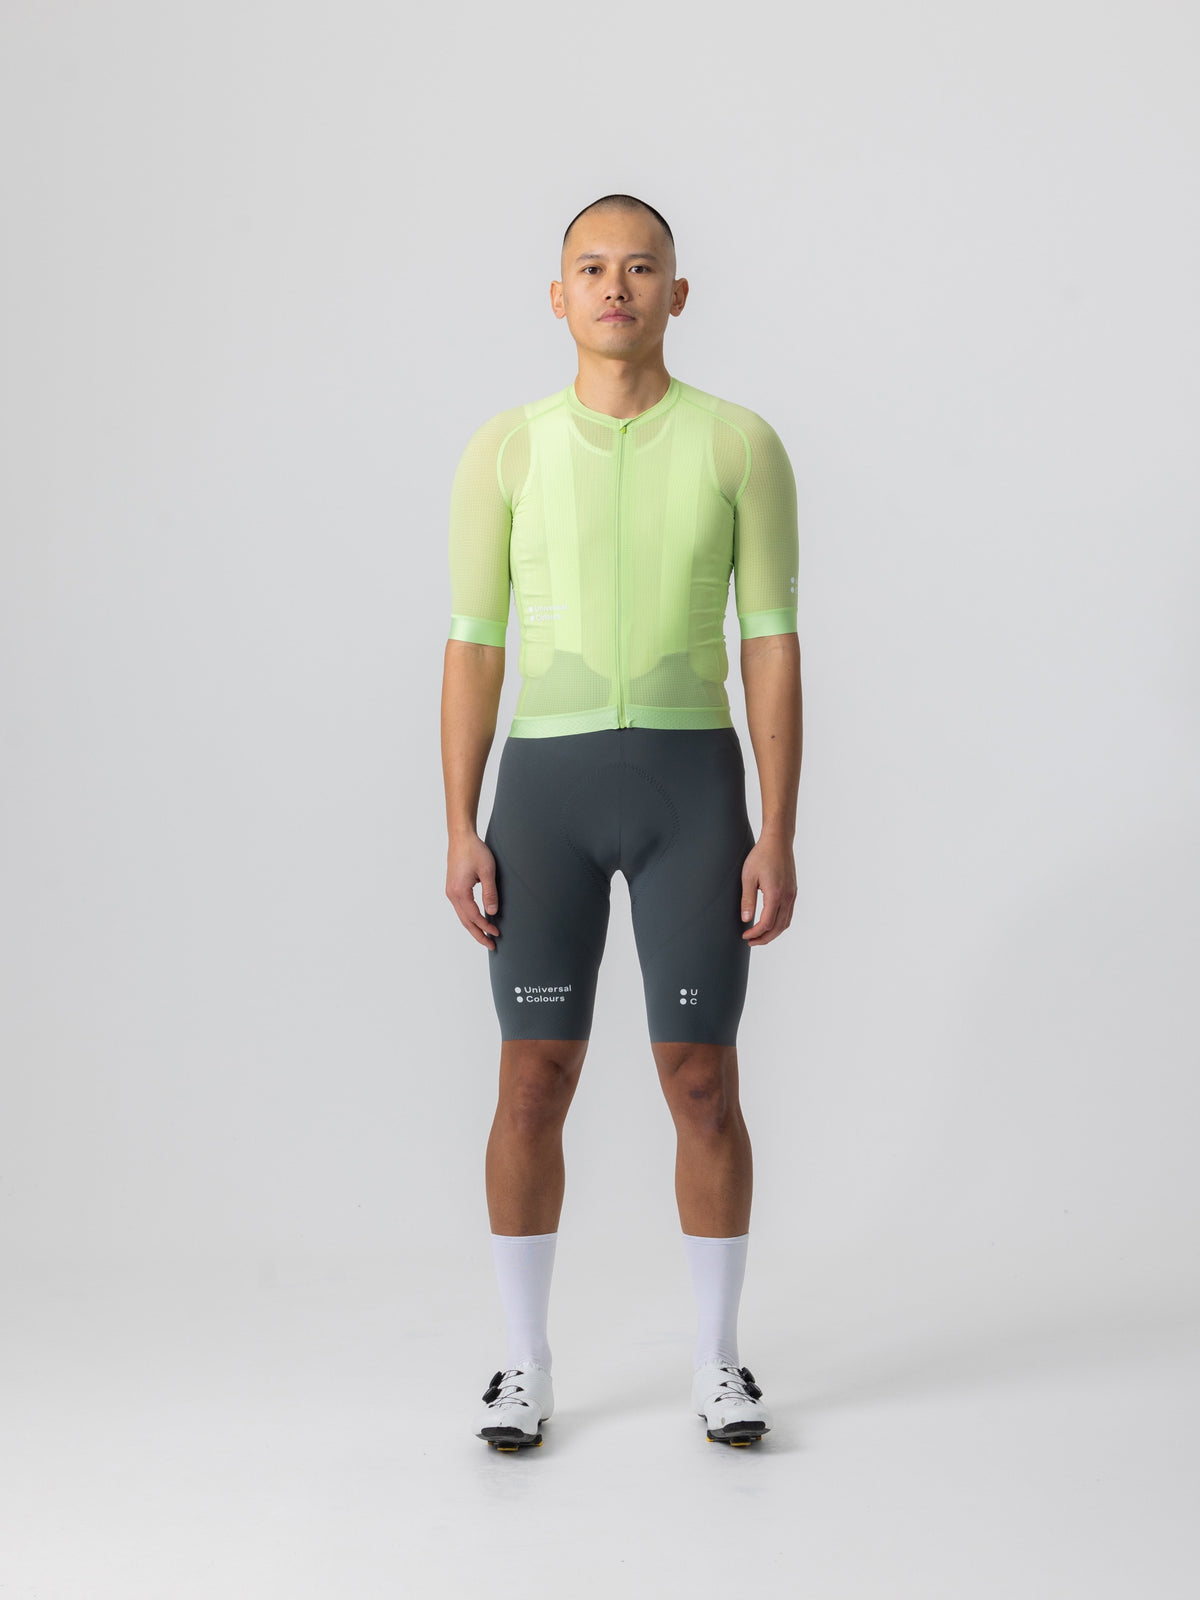 Universal Colours Chroma サイクリングジャージ ブライト・ライム | 超軽量フランス織りナイロンでパフォーマンス向上